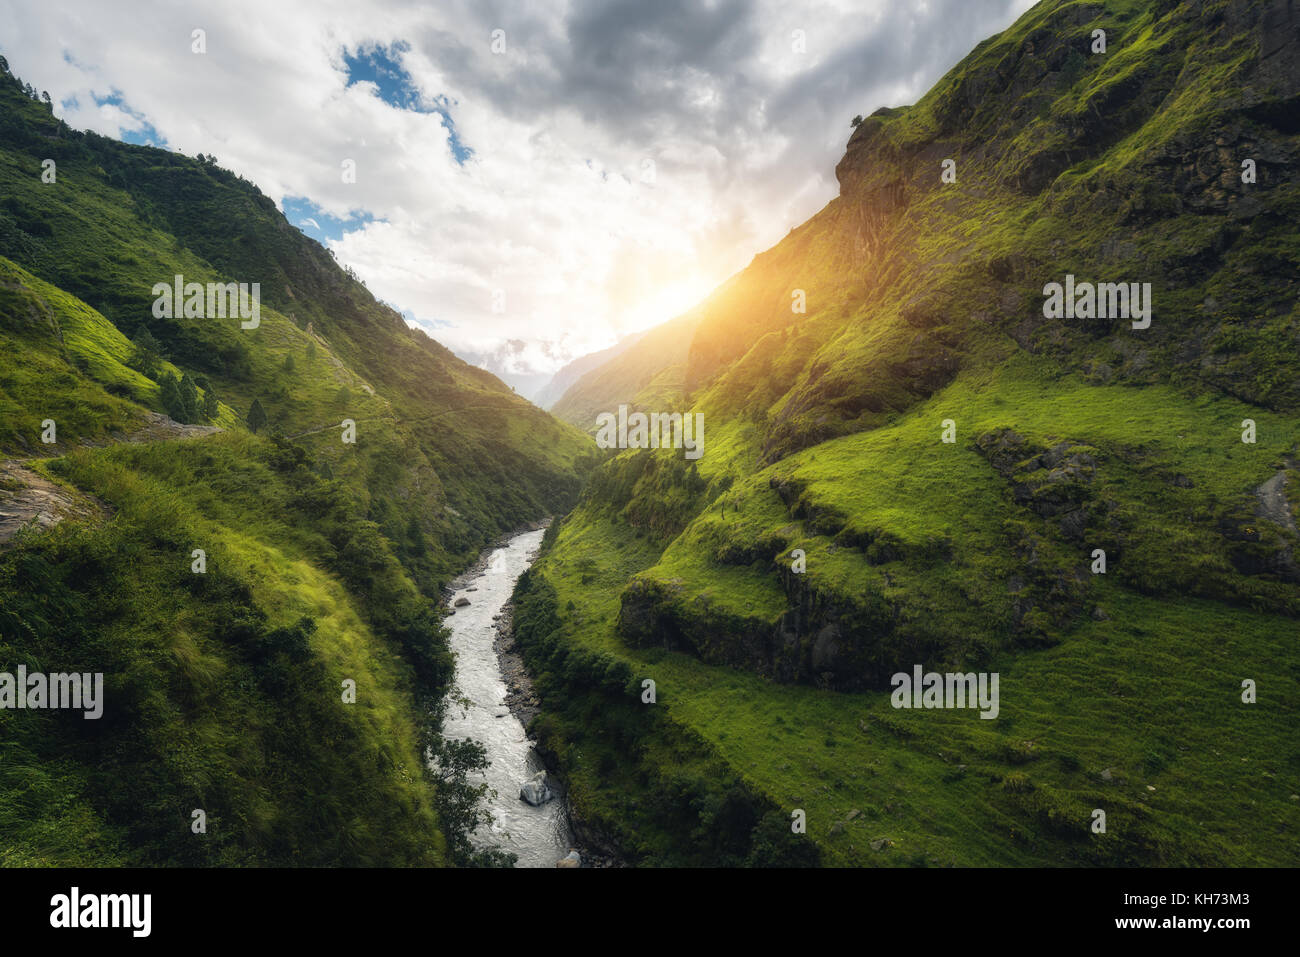 Vista con incredibili montagne himalayane coperte di erba verde, fiume, prati e bosco, cielo blu con nuvole, sole e pietre in acqua in autunno in Nepal Foto Stock